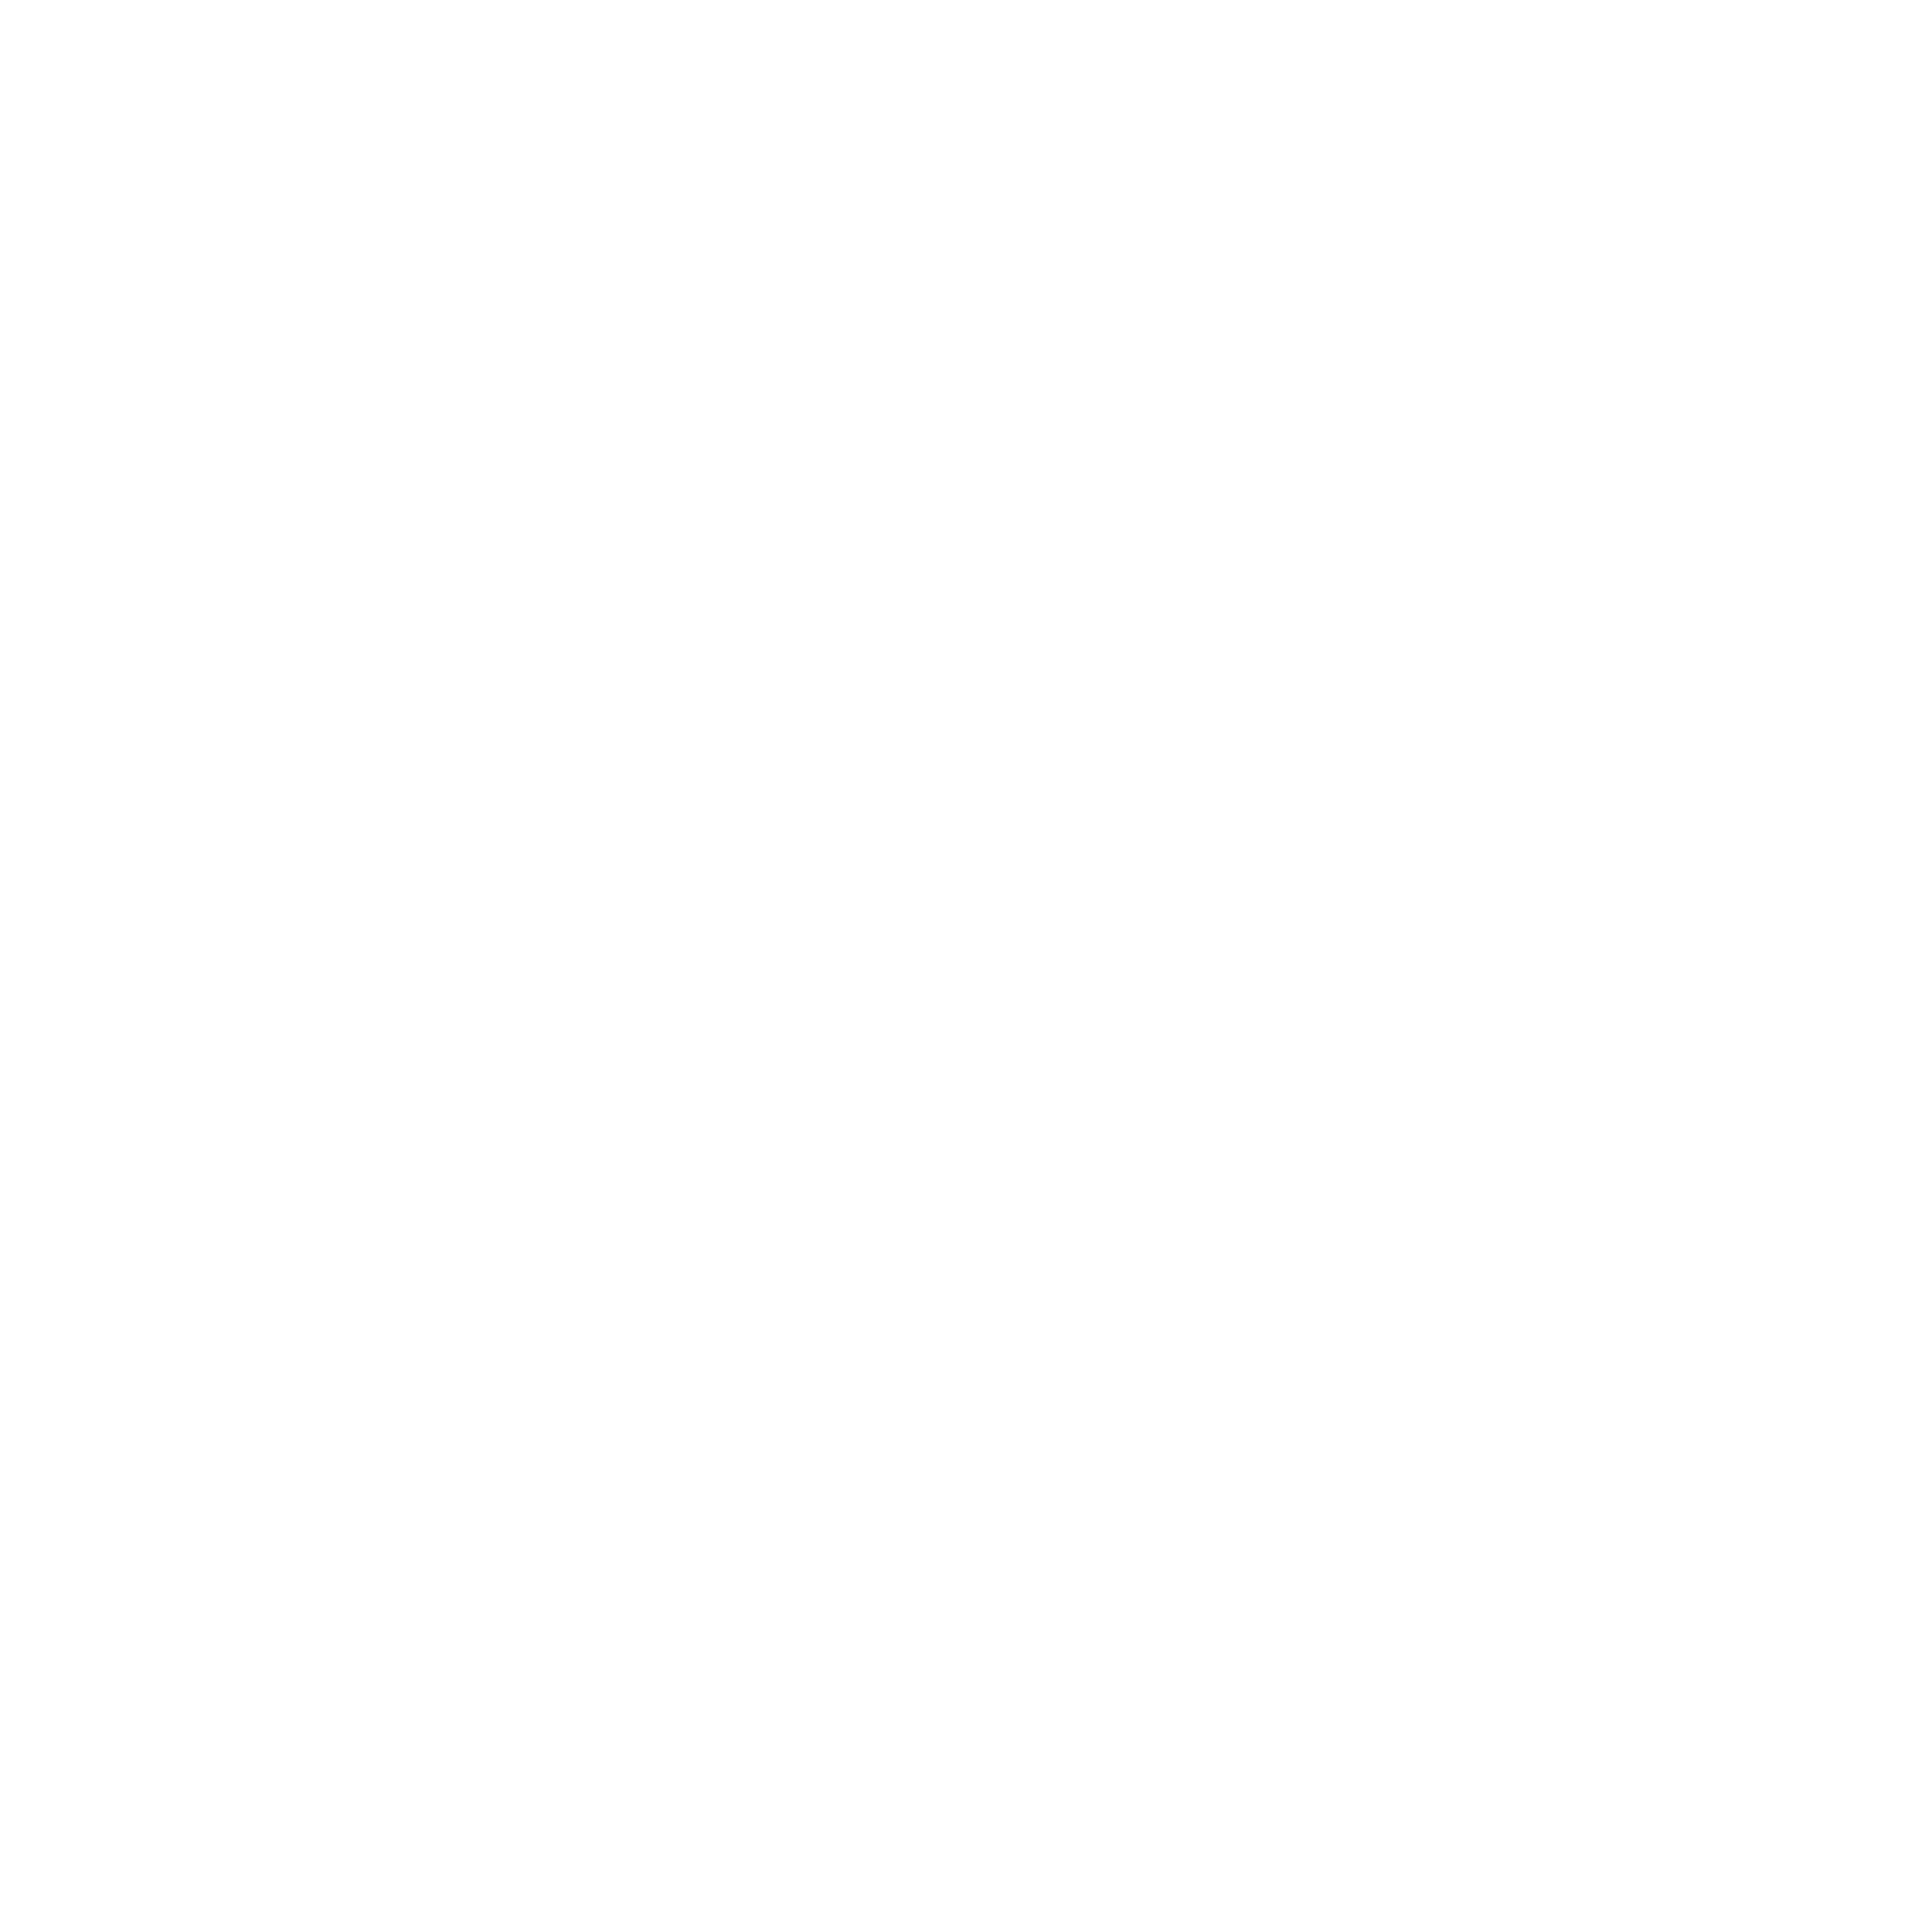 Kizuqi Lab